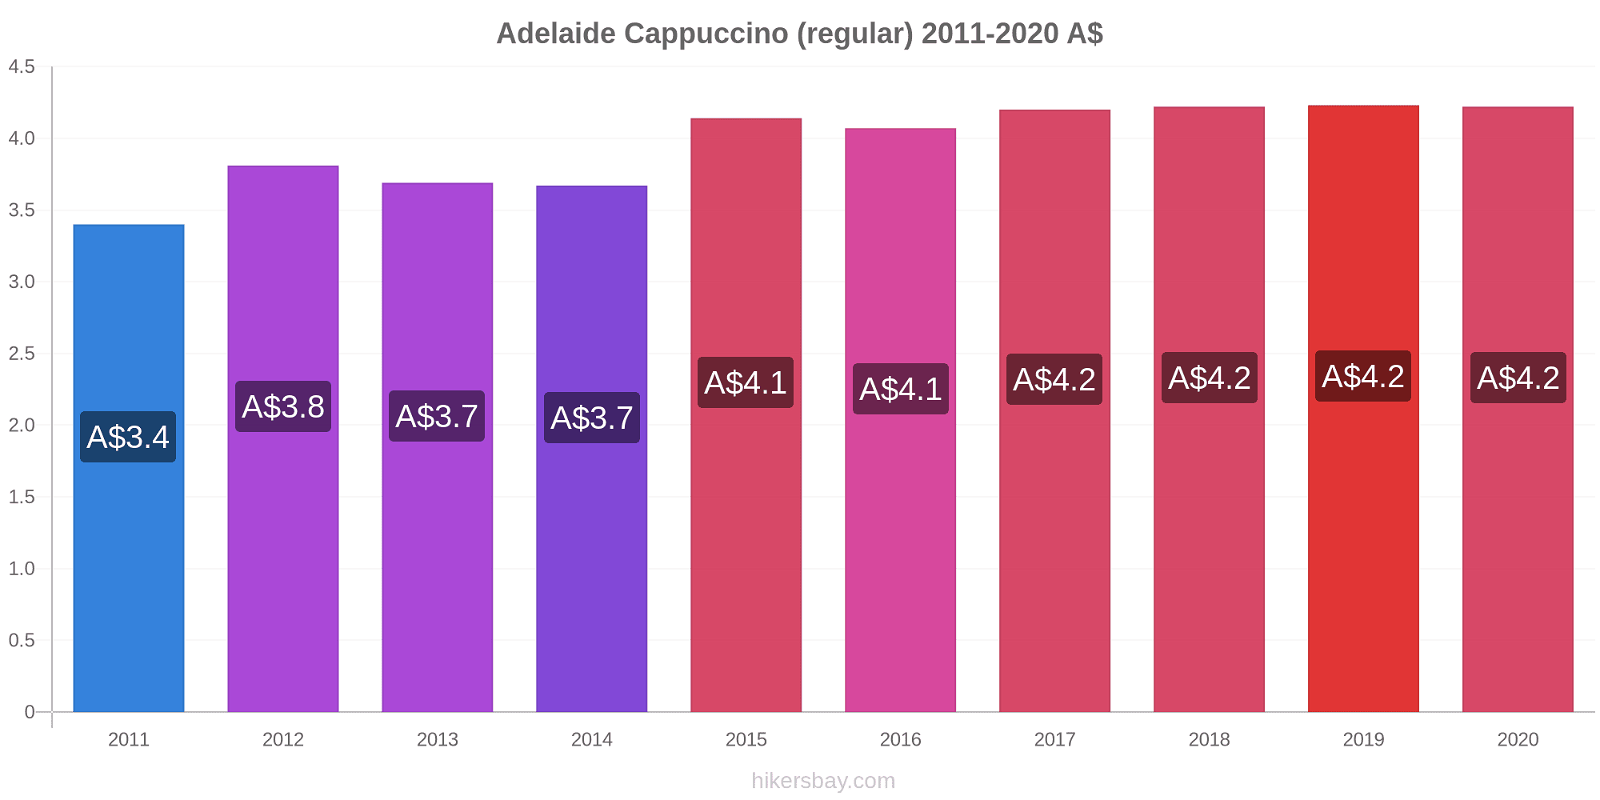 Adelaide price changes Cappuccino (regular) hikersbay.com